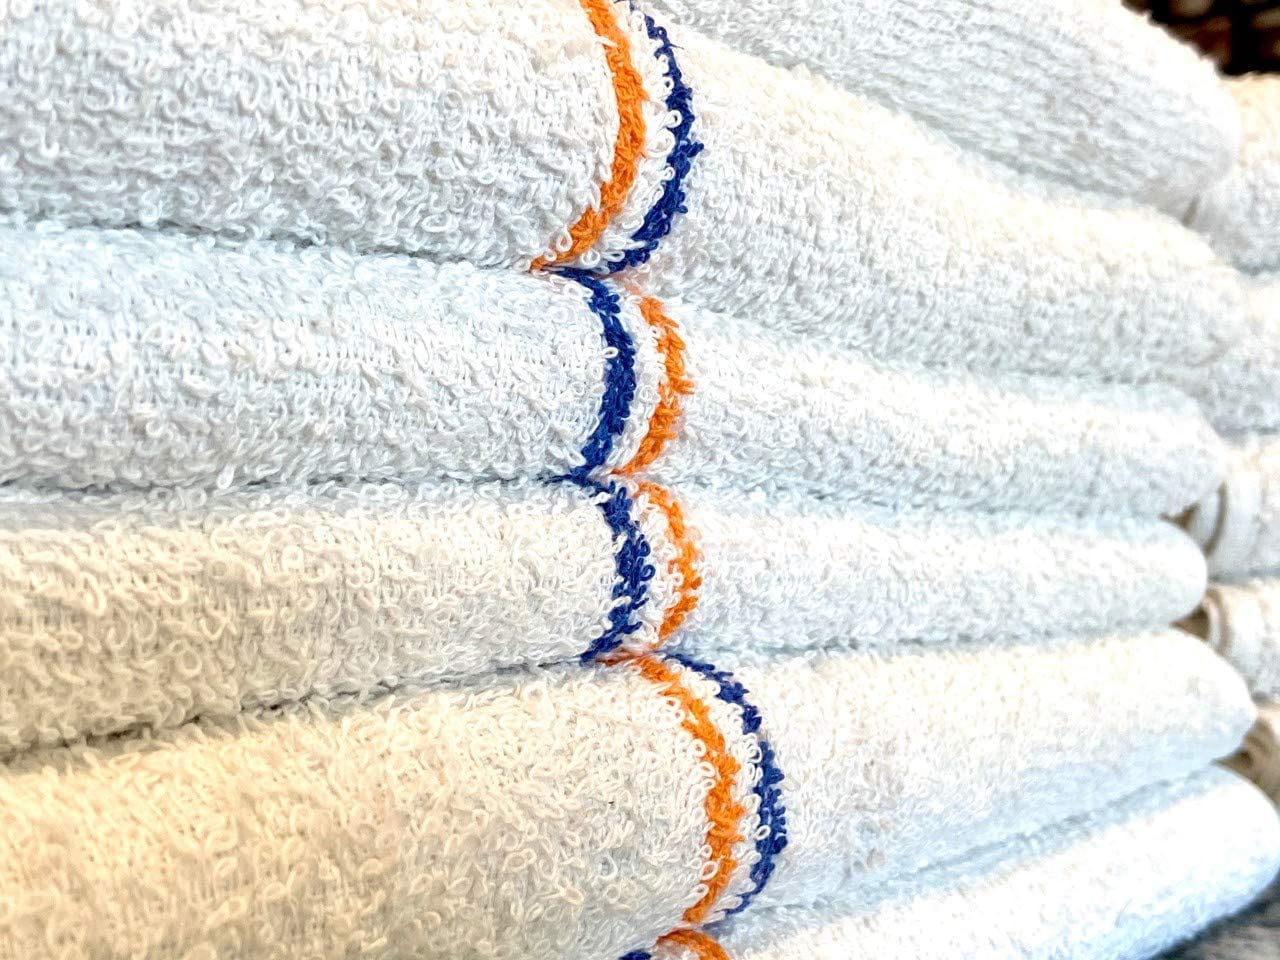 12 gold/orange stripe bar mops restaurant kitchen commercial towels 32oz 